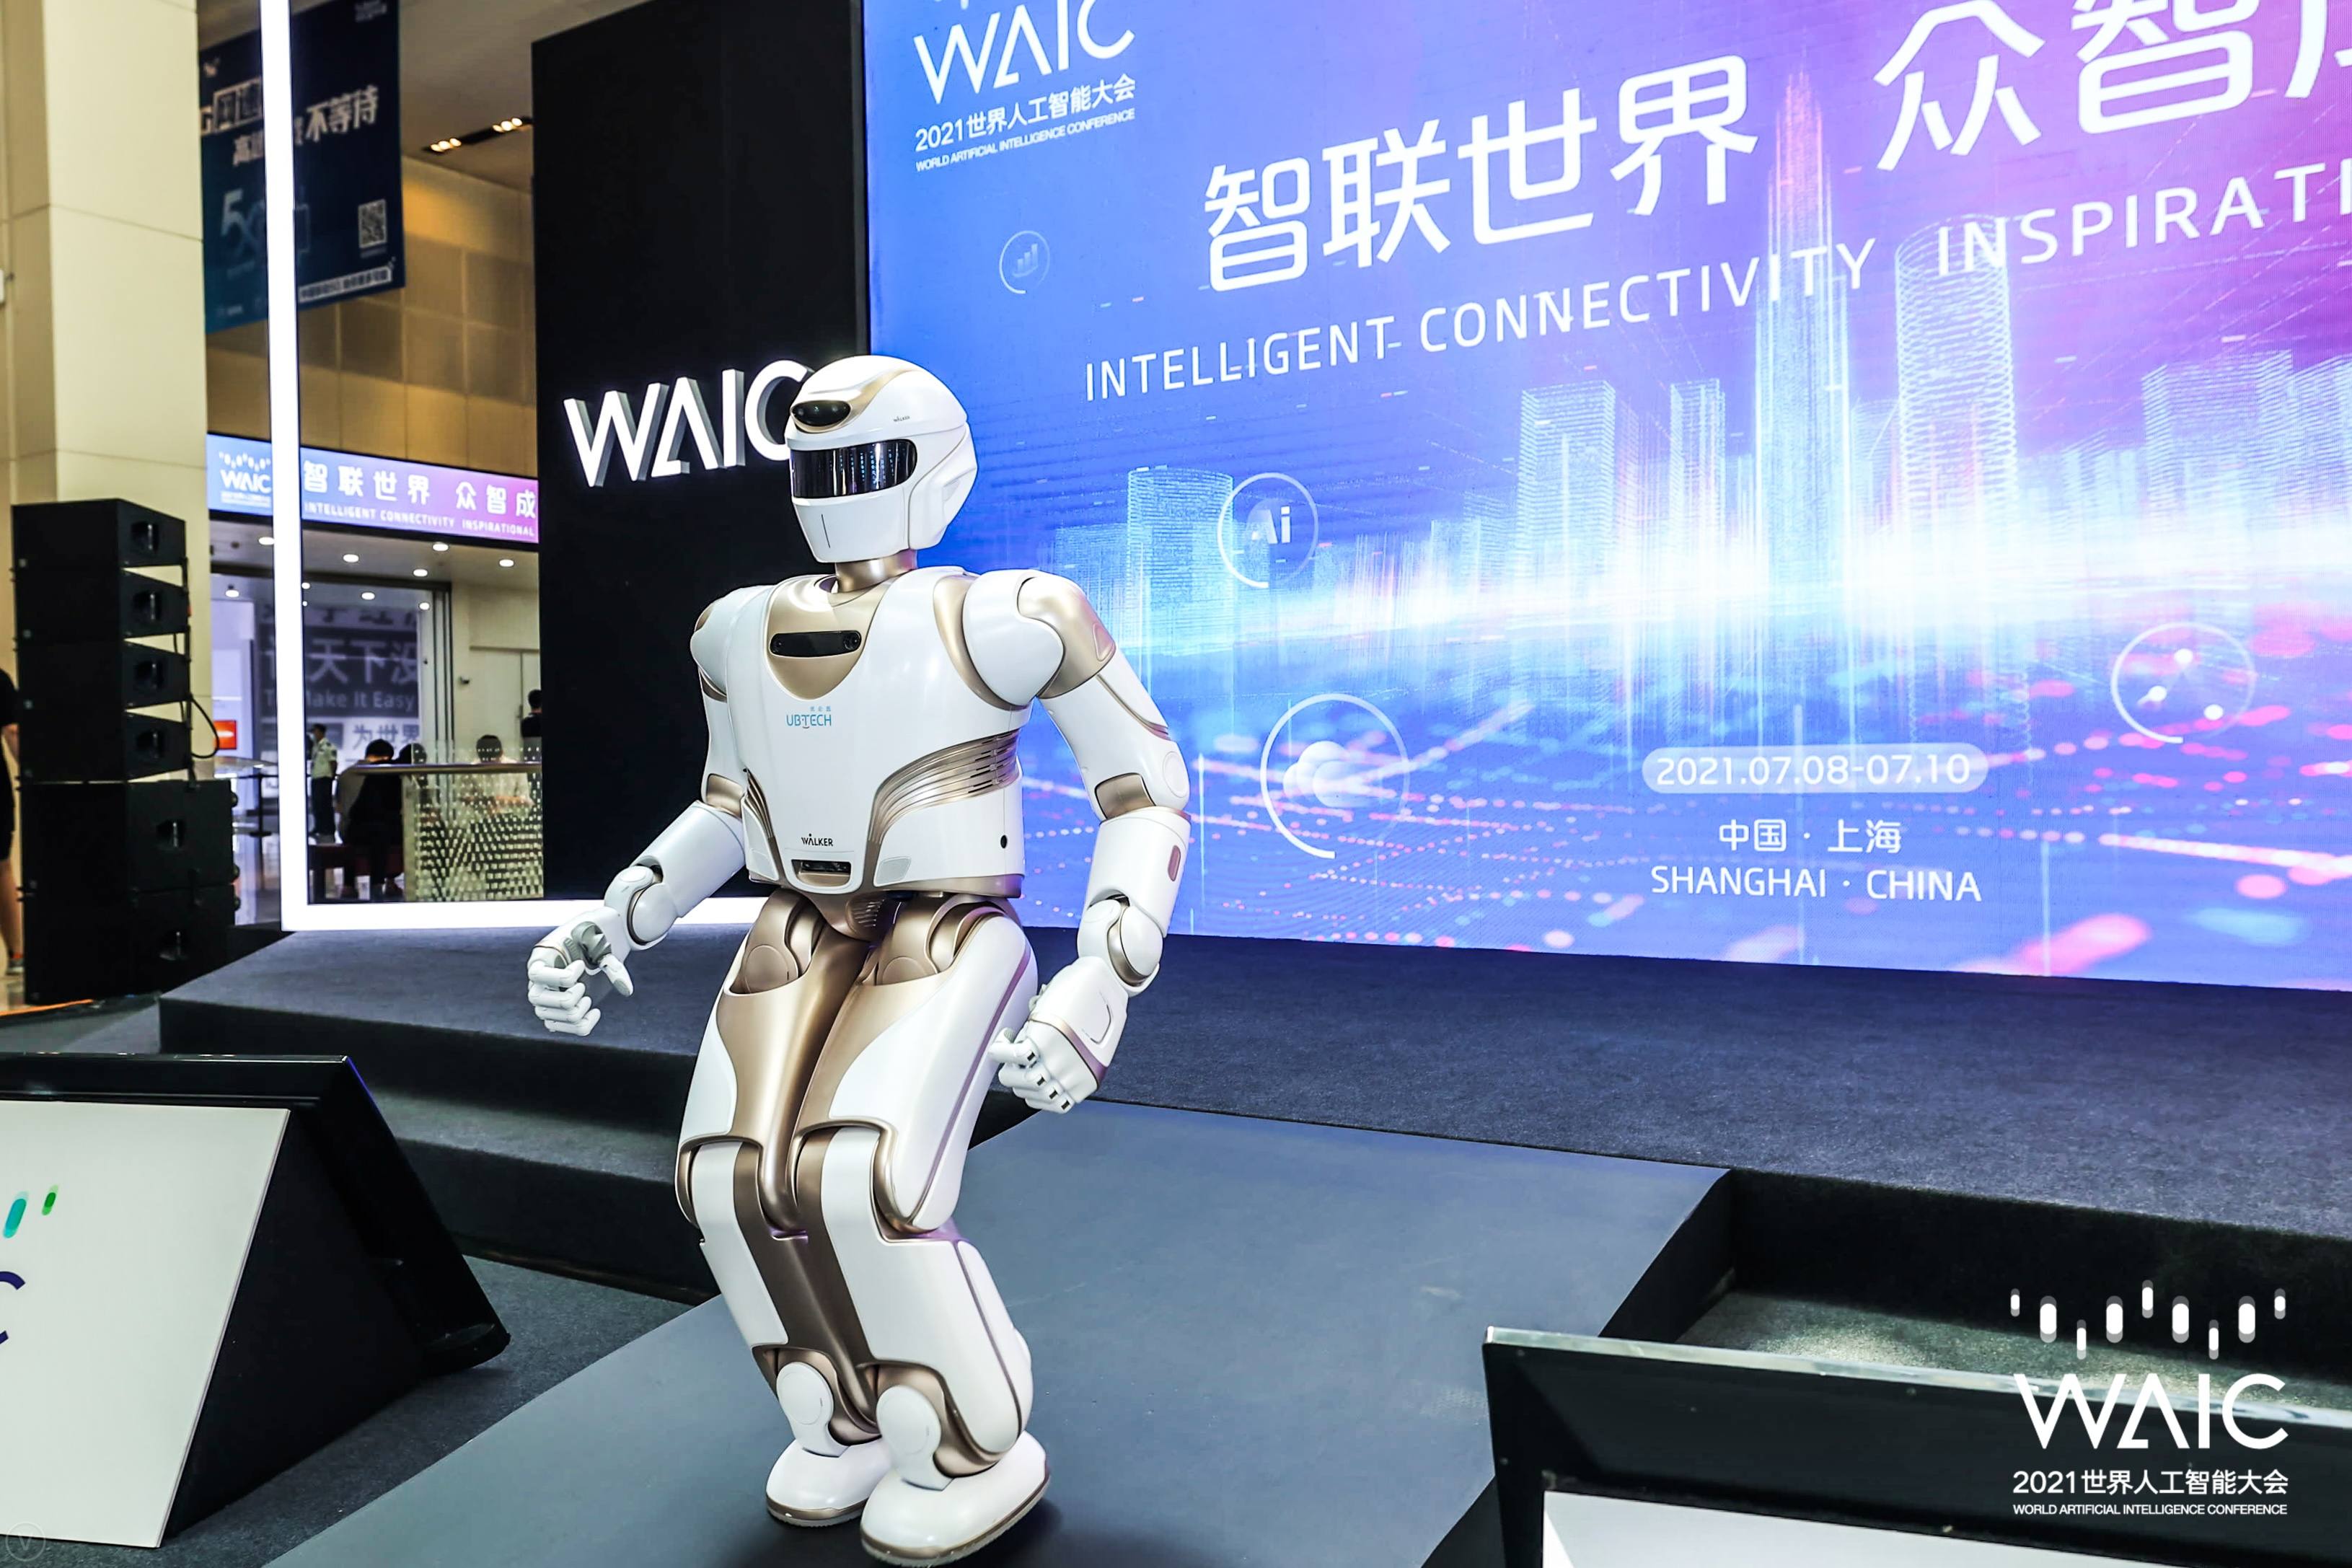 “智联世界，众智成城”：从2021WAIC 看见人工智能的现在与未来